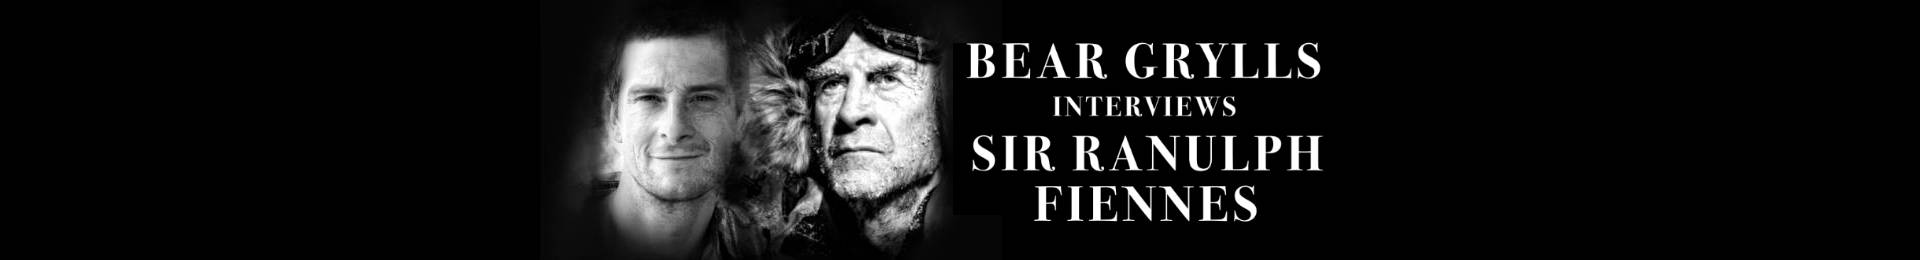 Bear Grylls Interviews Sir Ranulph Fiennes banner image